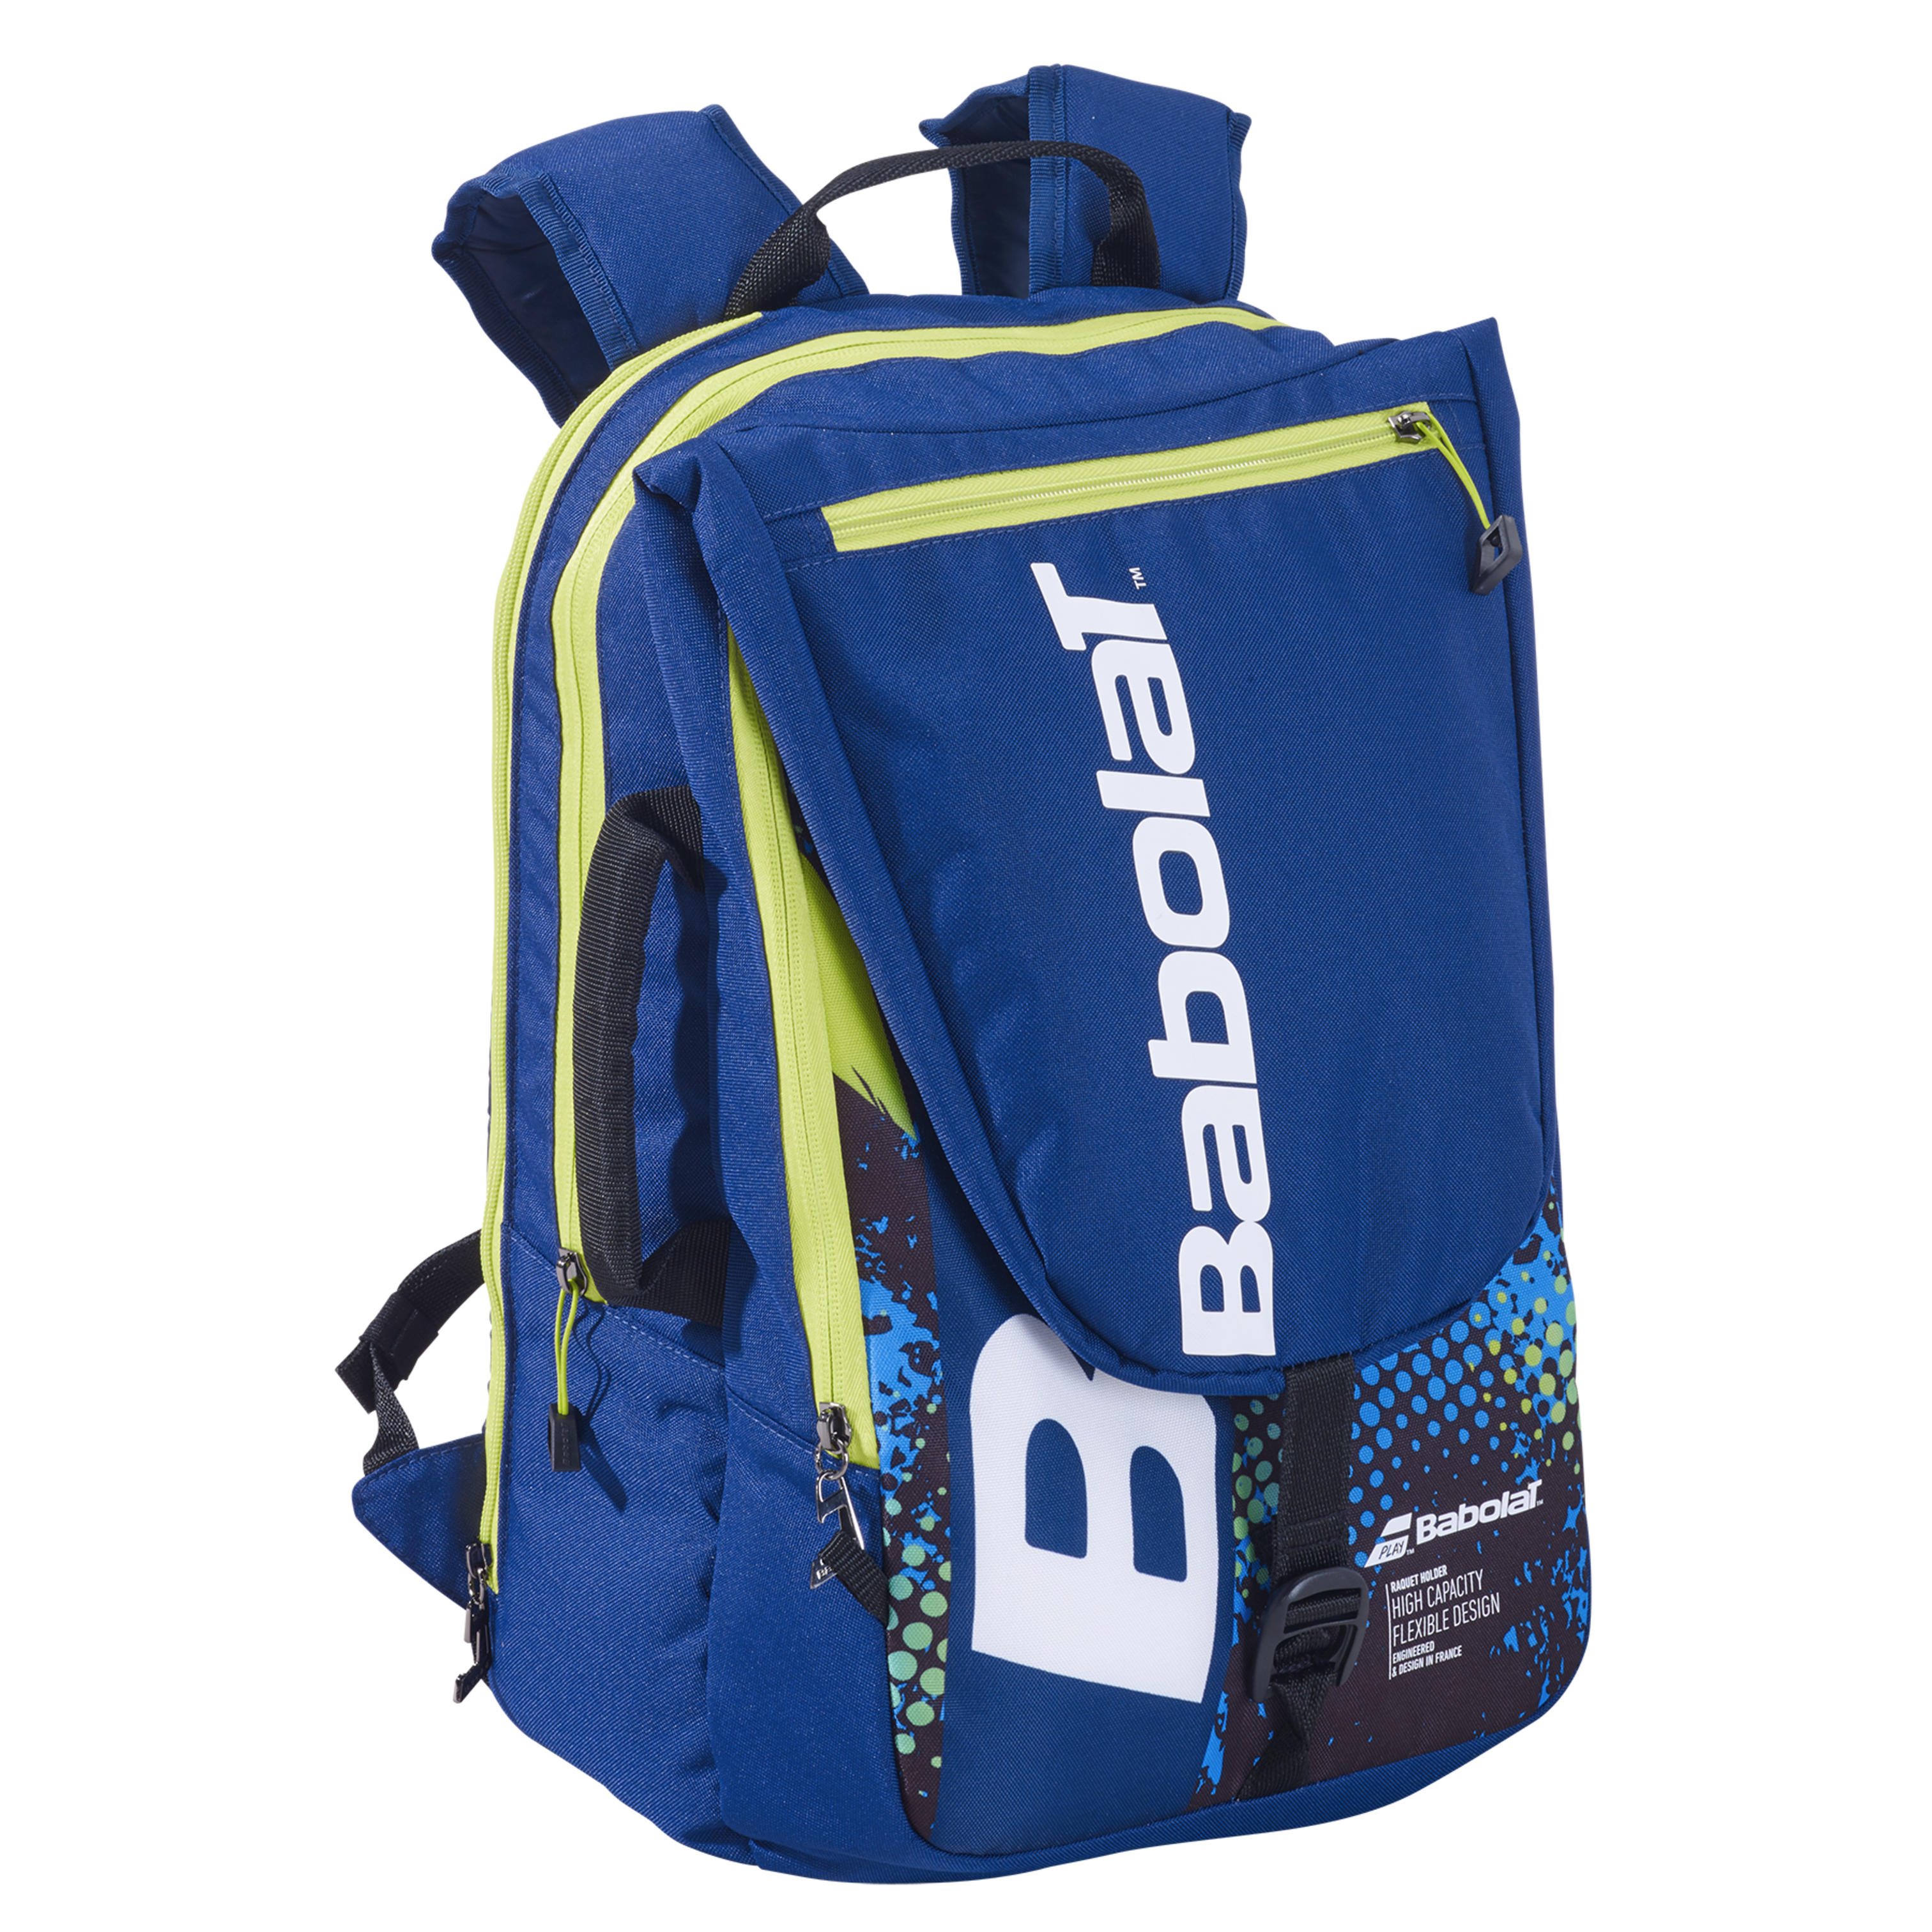 Tournament Bag | Babolat